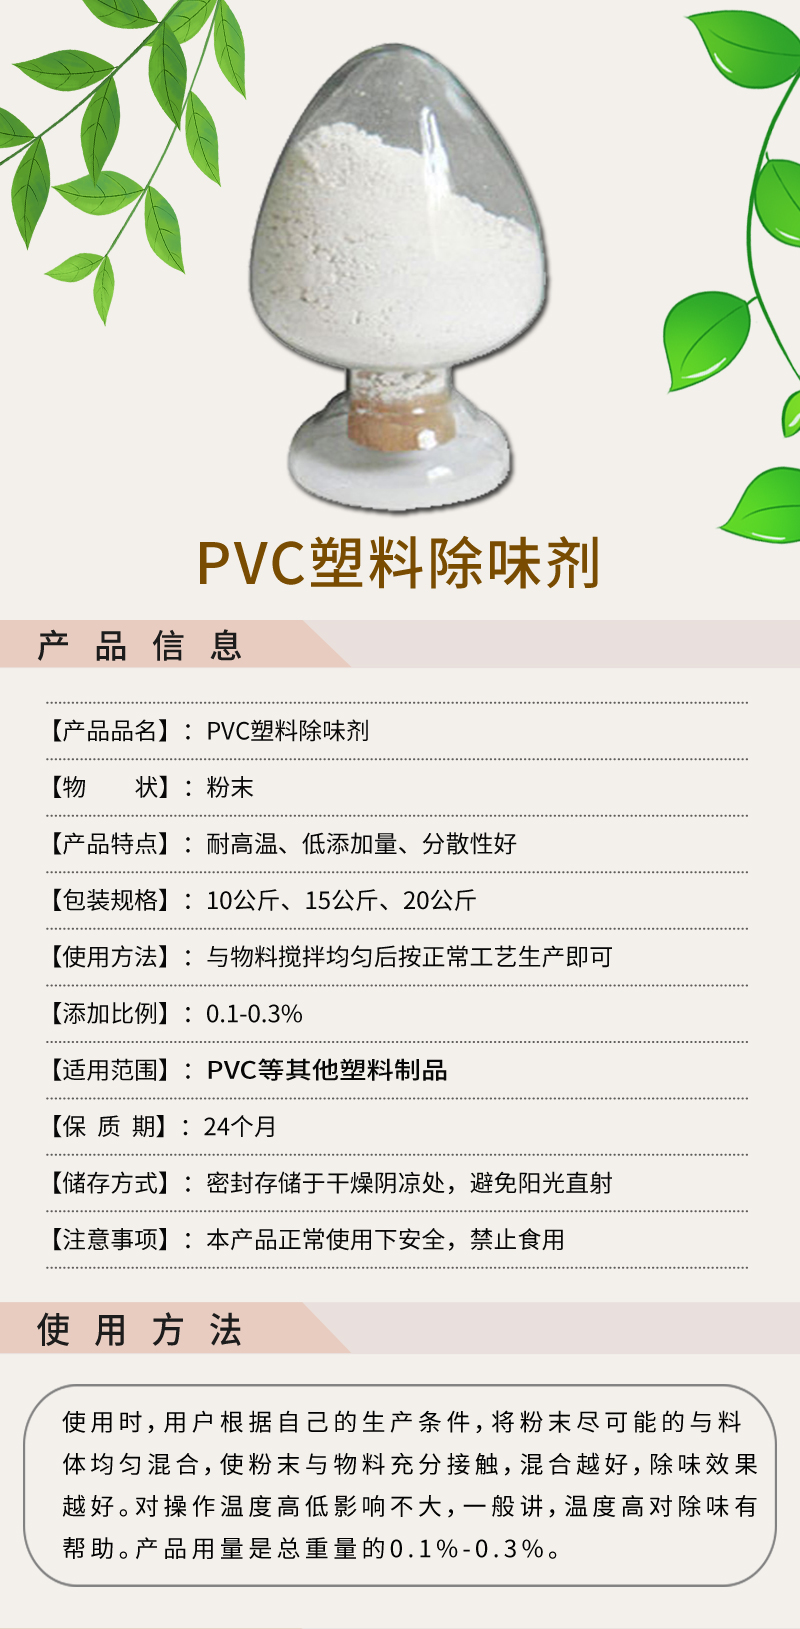 PVC塑料除味剂详情图1.jpg